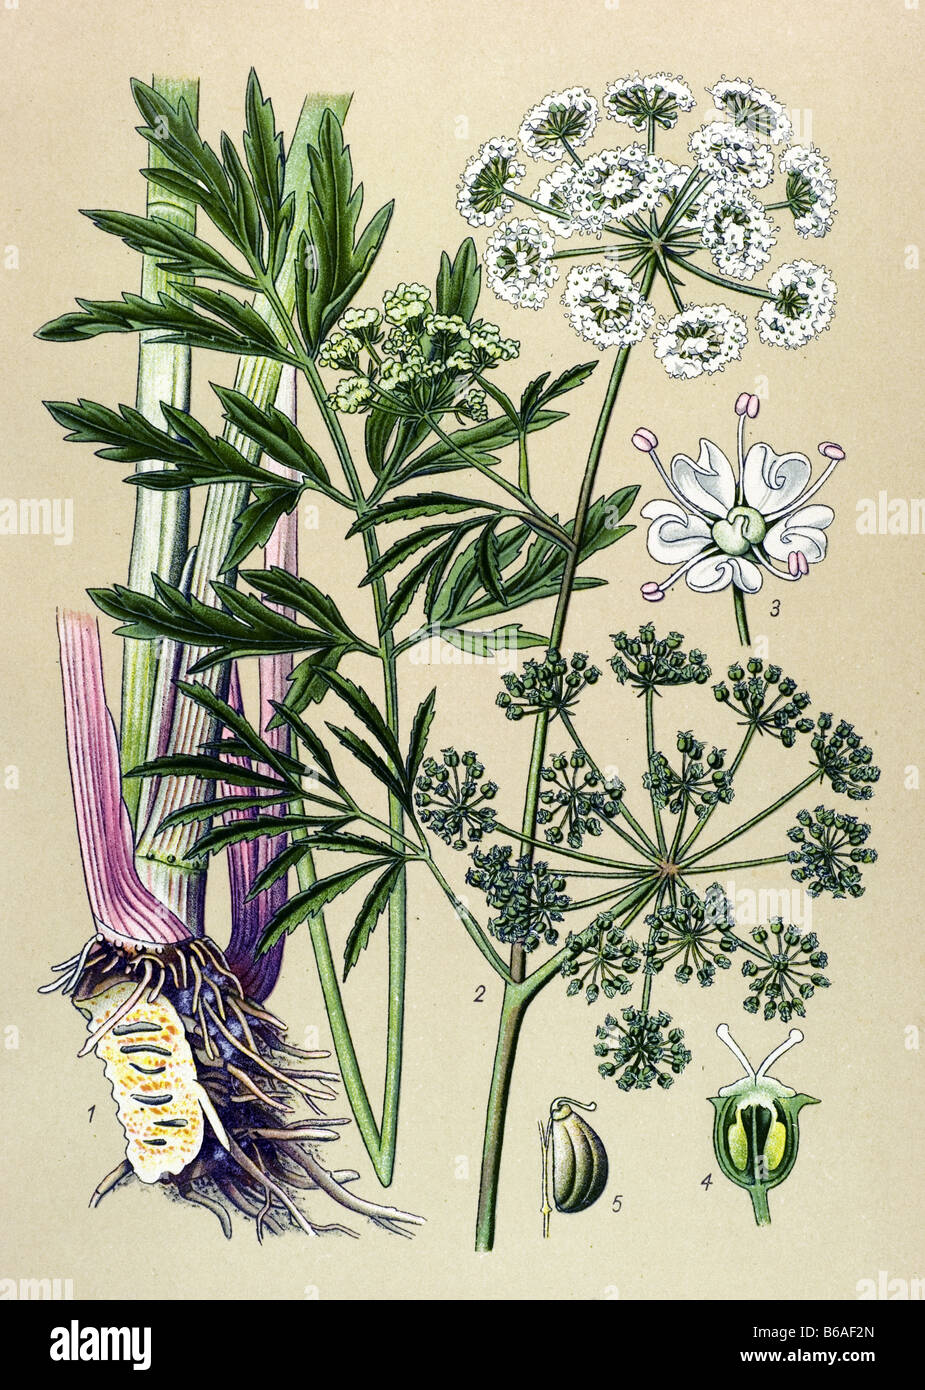 Cowbane, Cicuta virosa poisonous plants illustrations Stock Photo